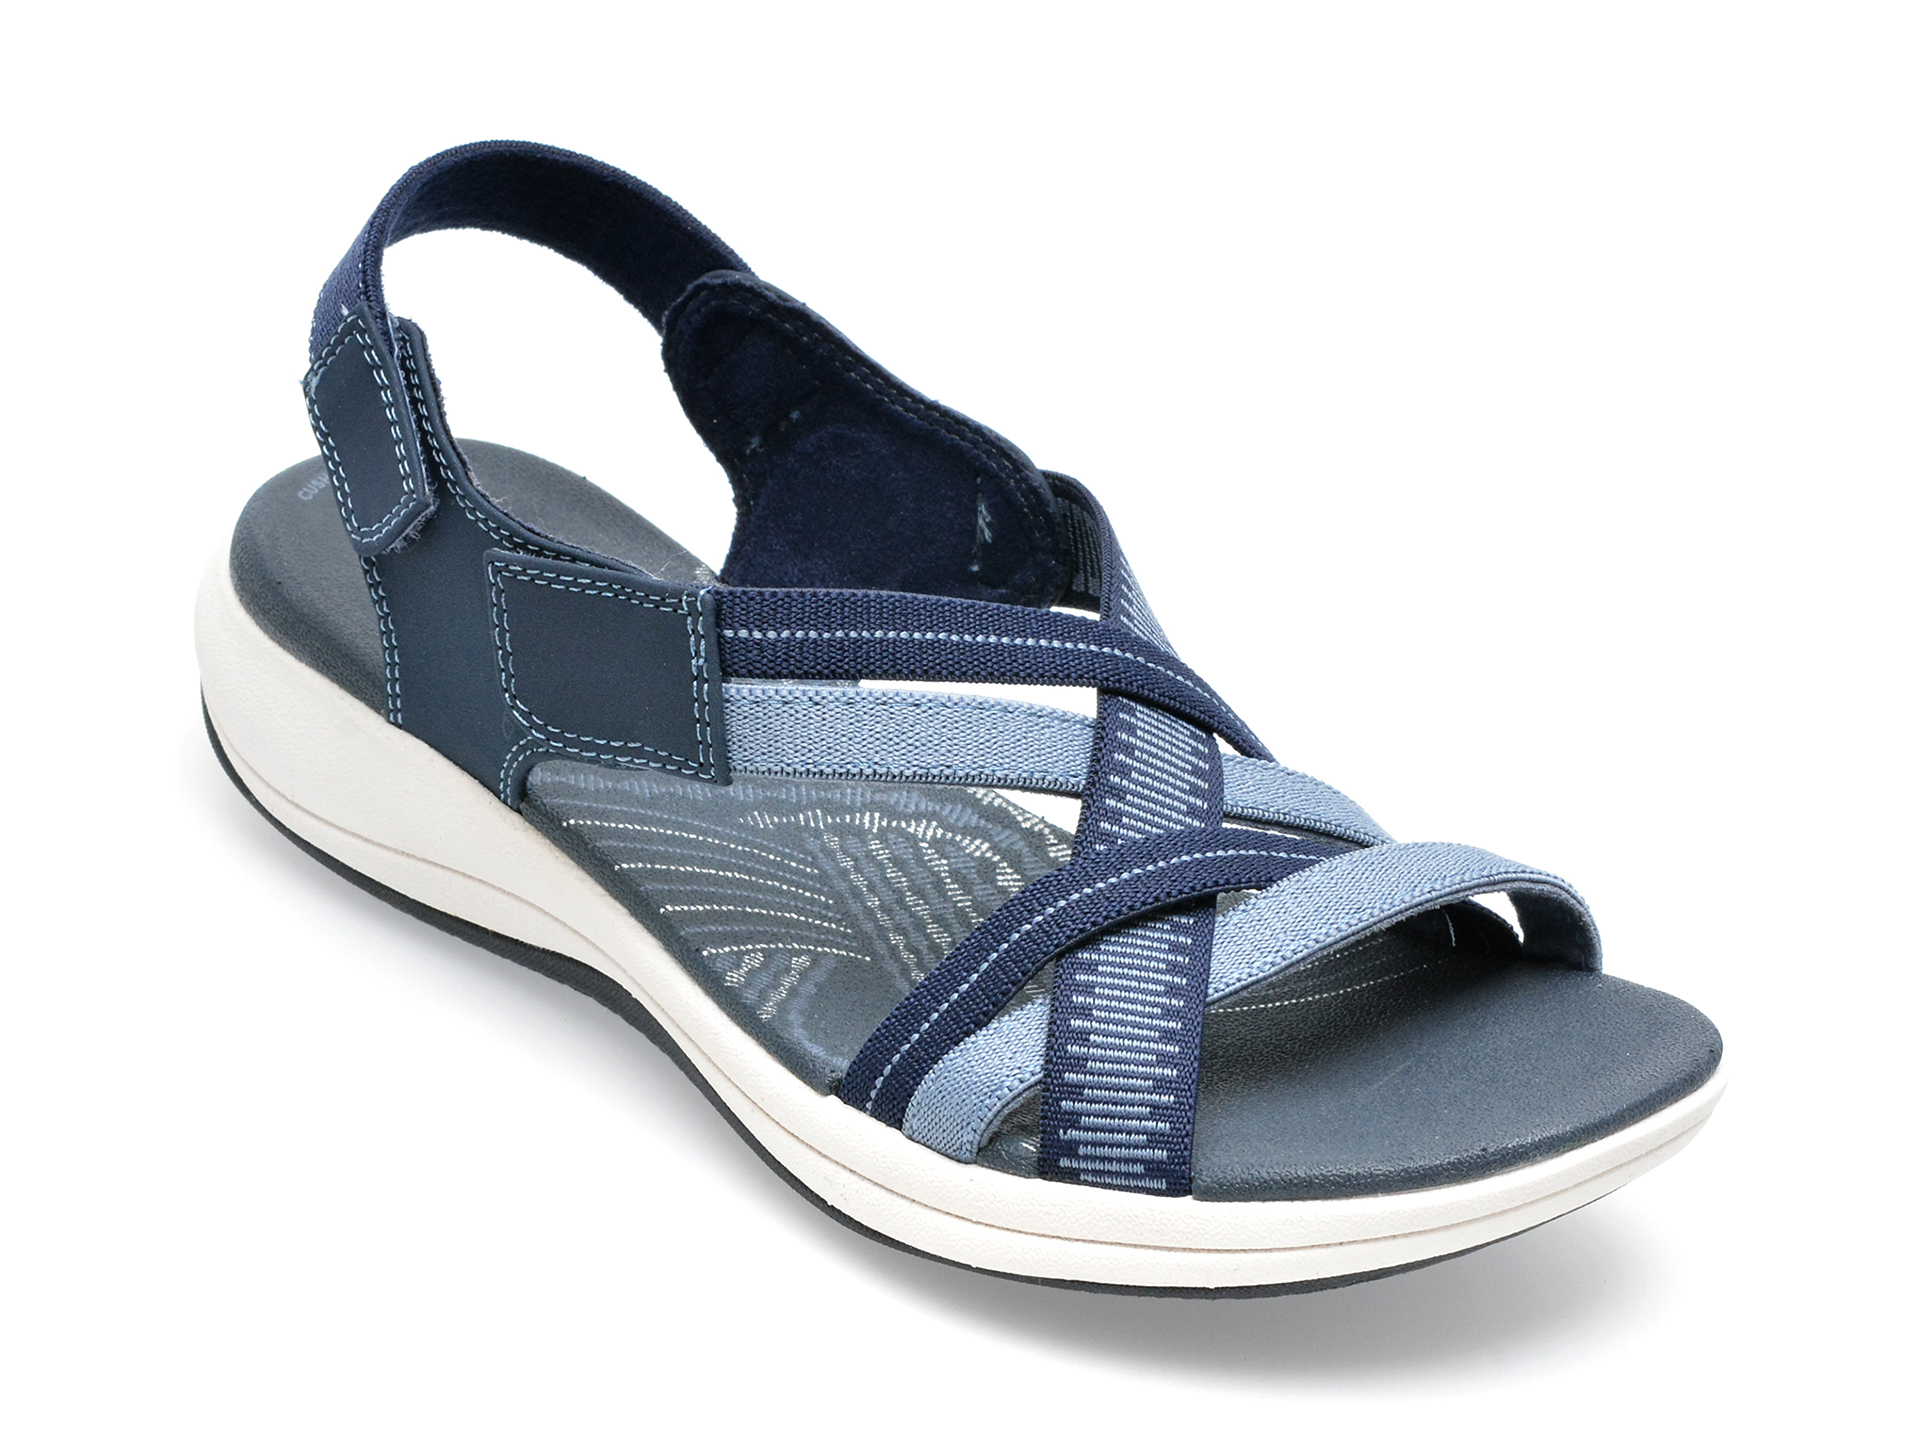 Sandale CLARKS bleumarin, MIRA IVY 0912, din material textil femei 2023-03-21